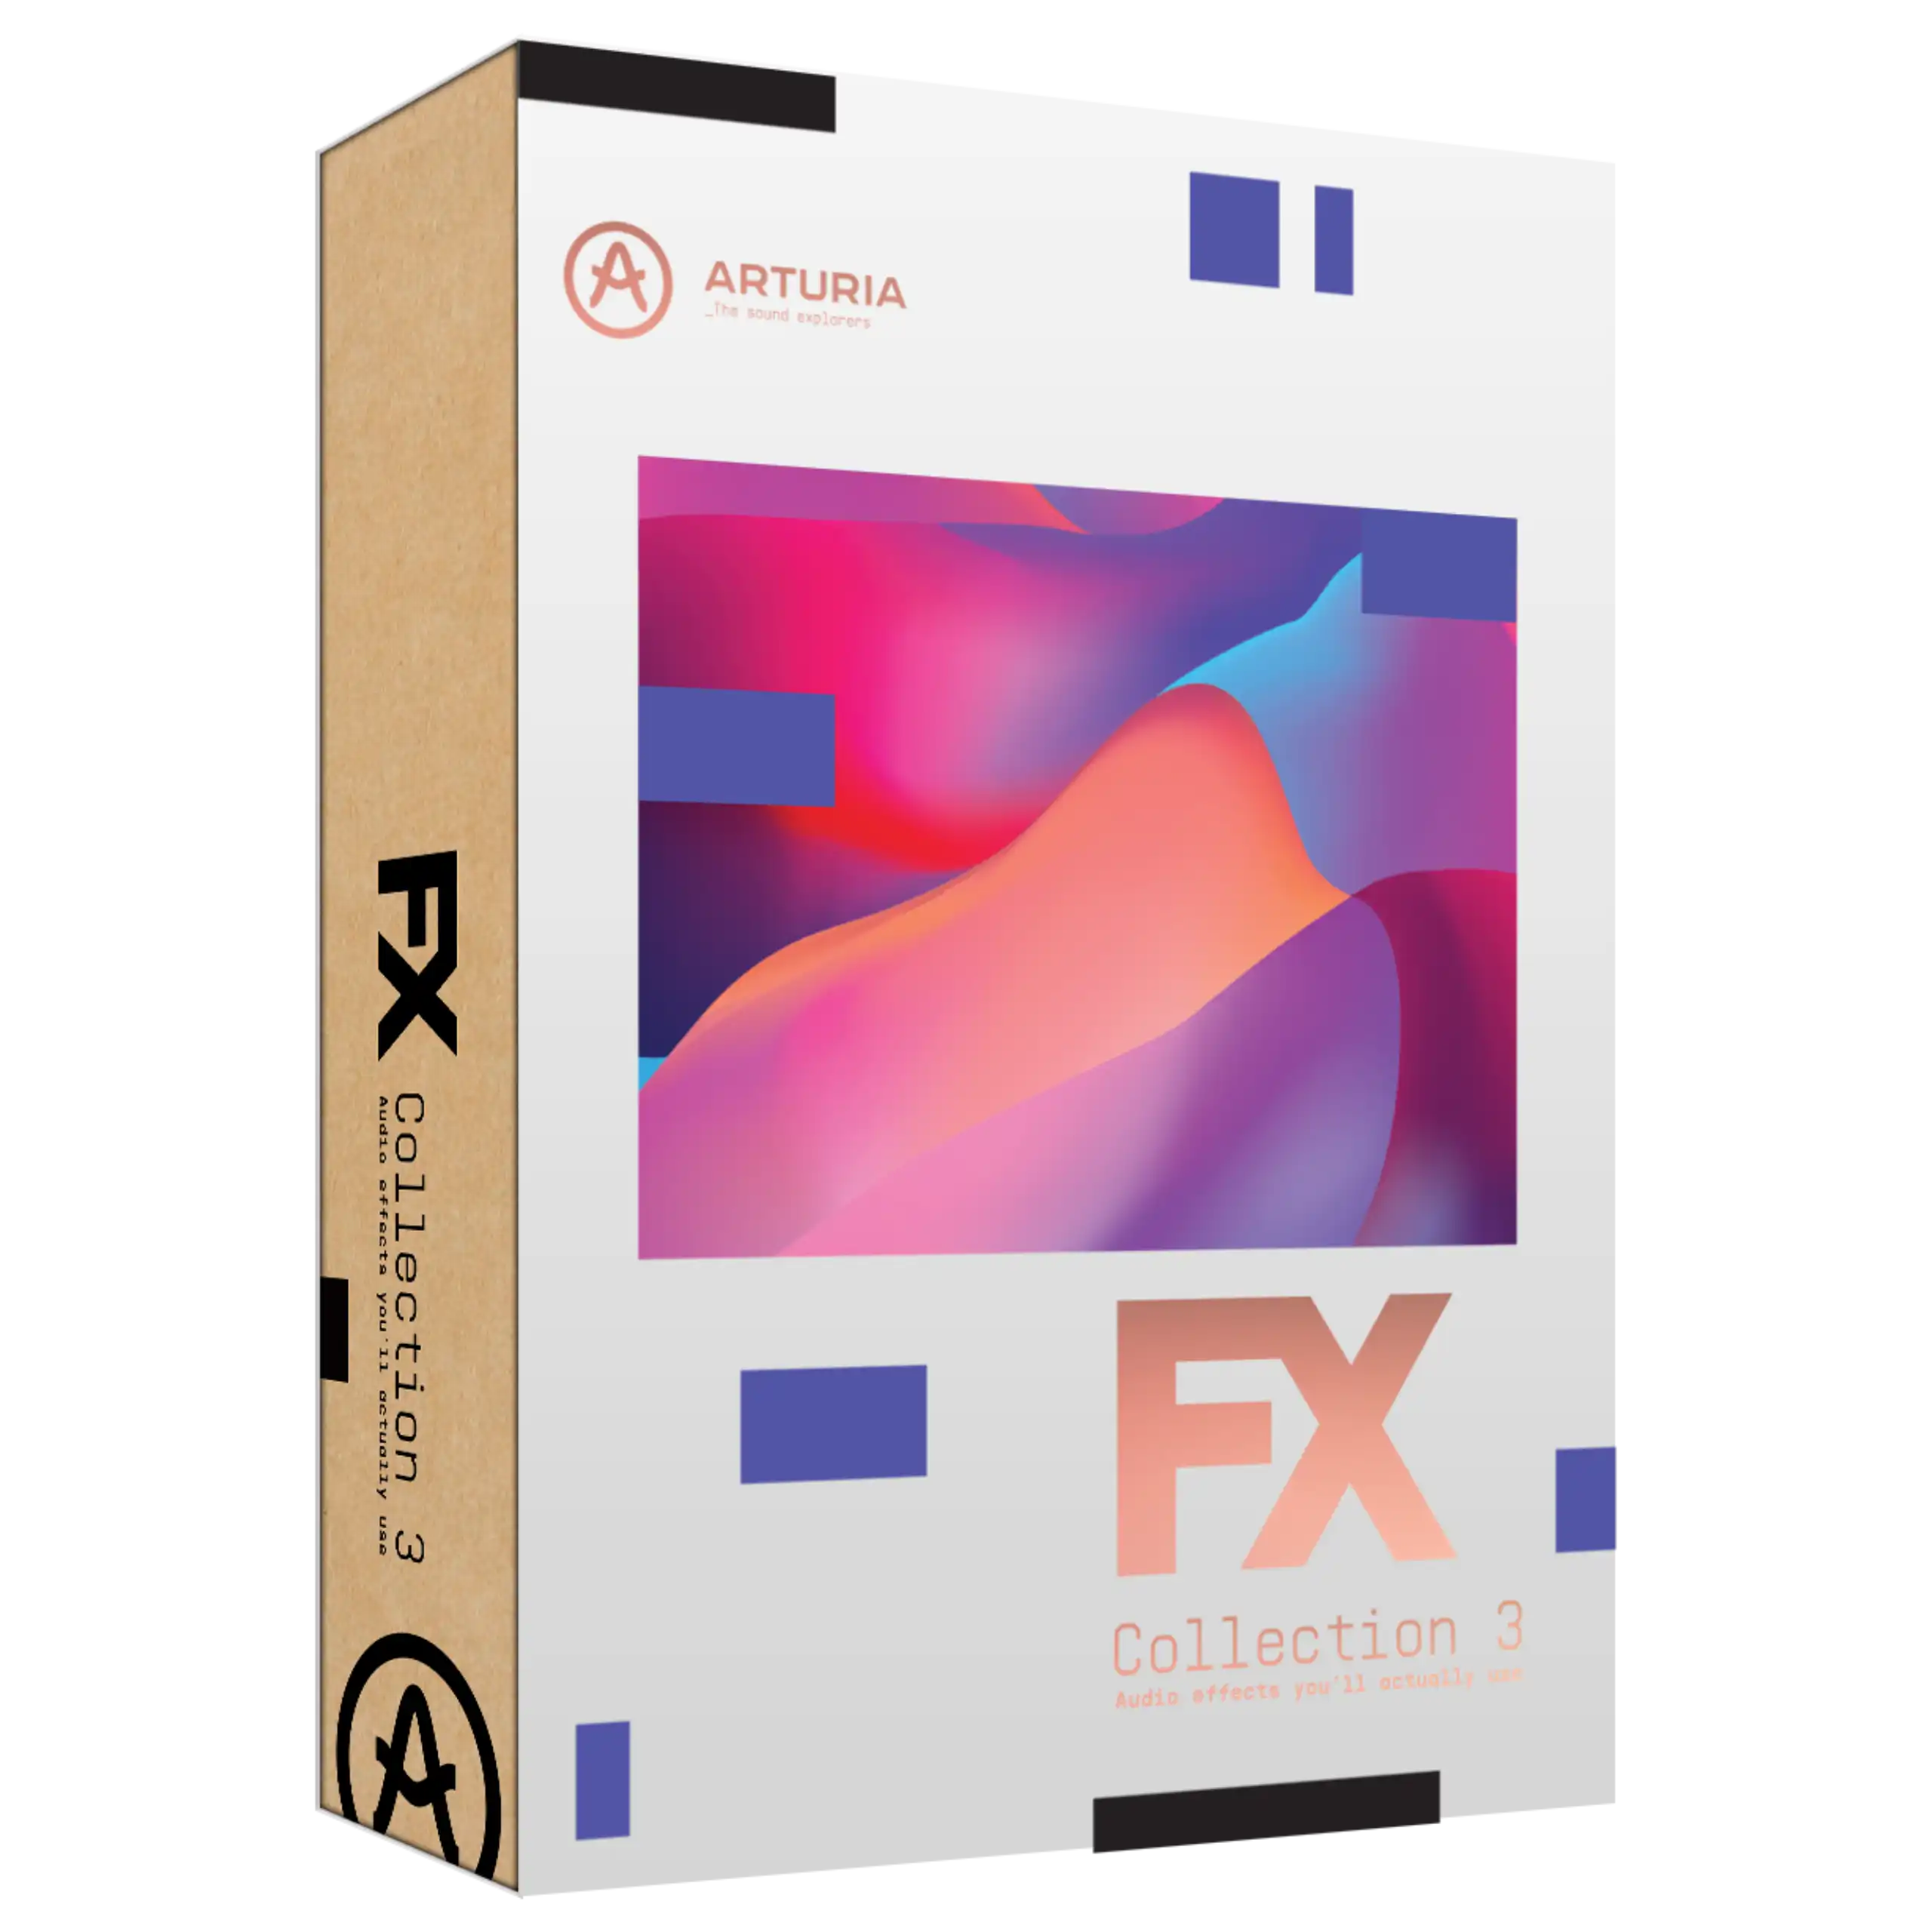 Arturia FX Collection 3 Box 